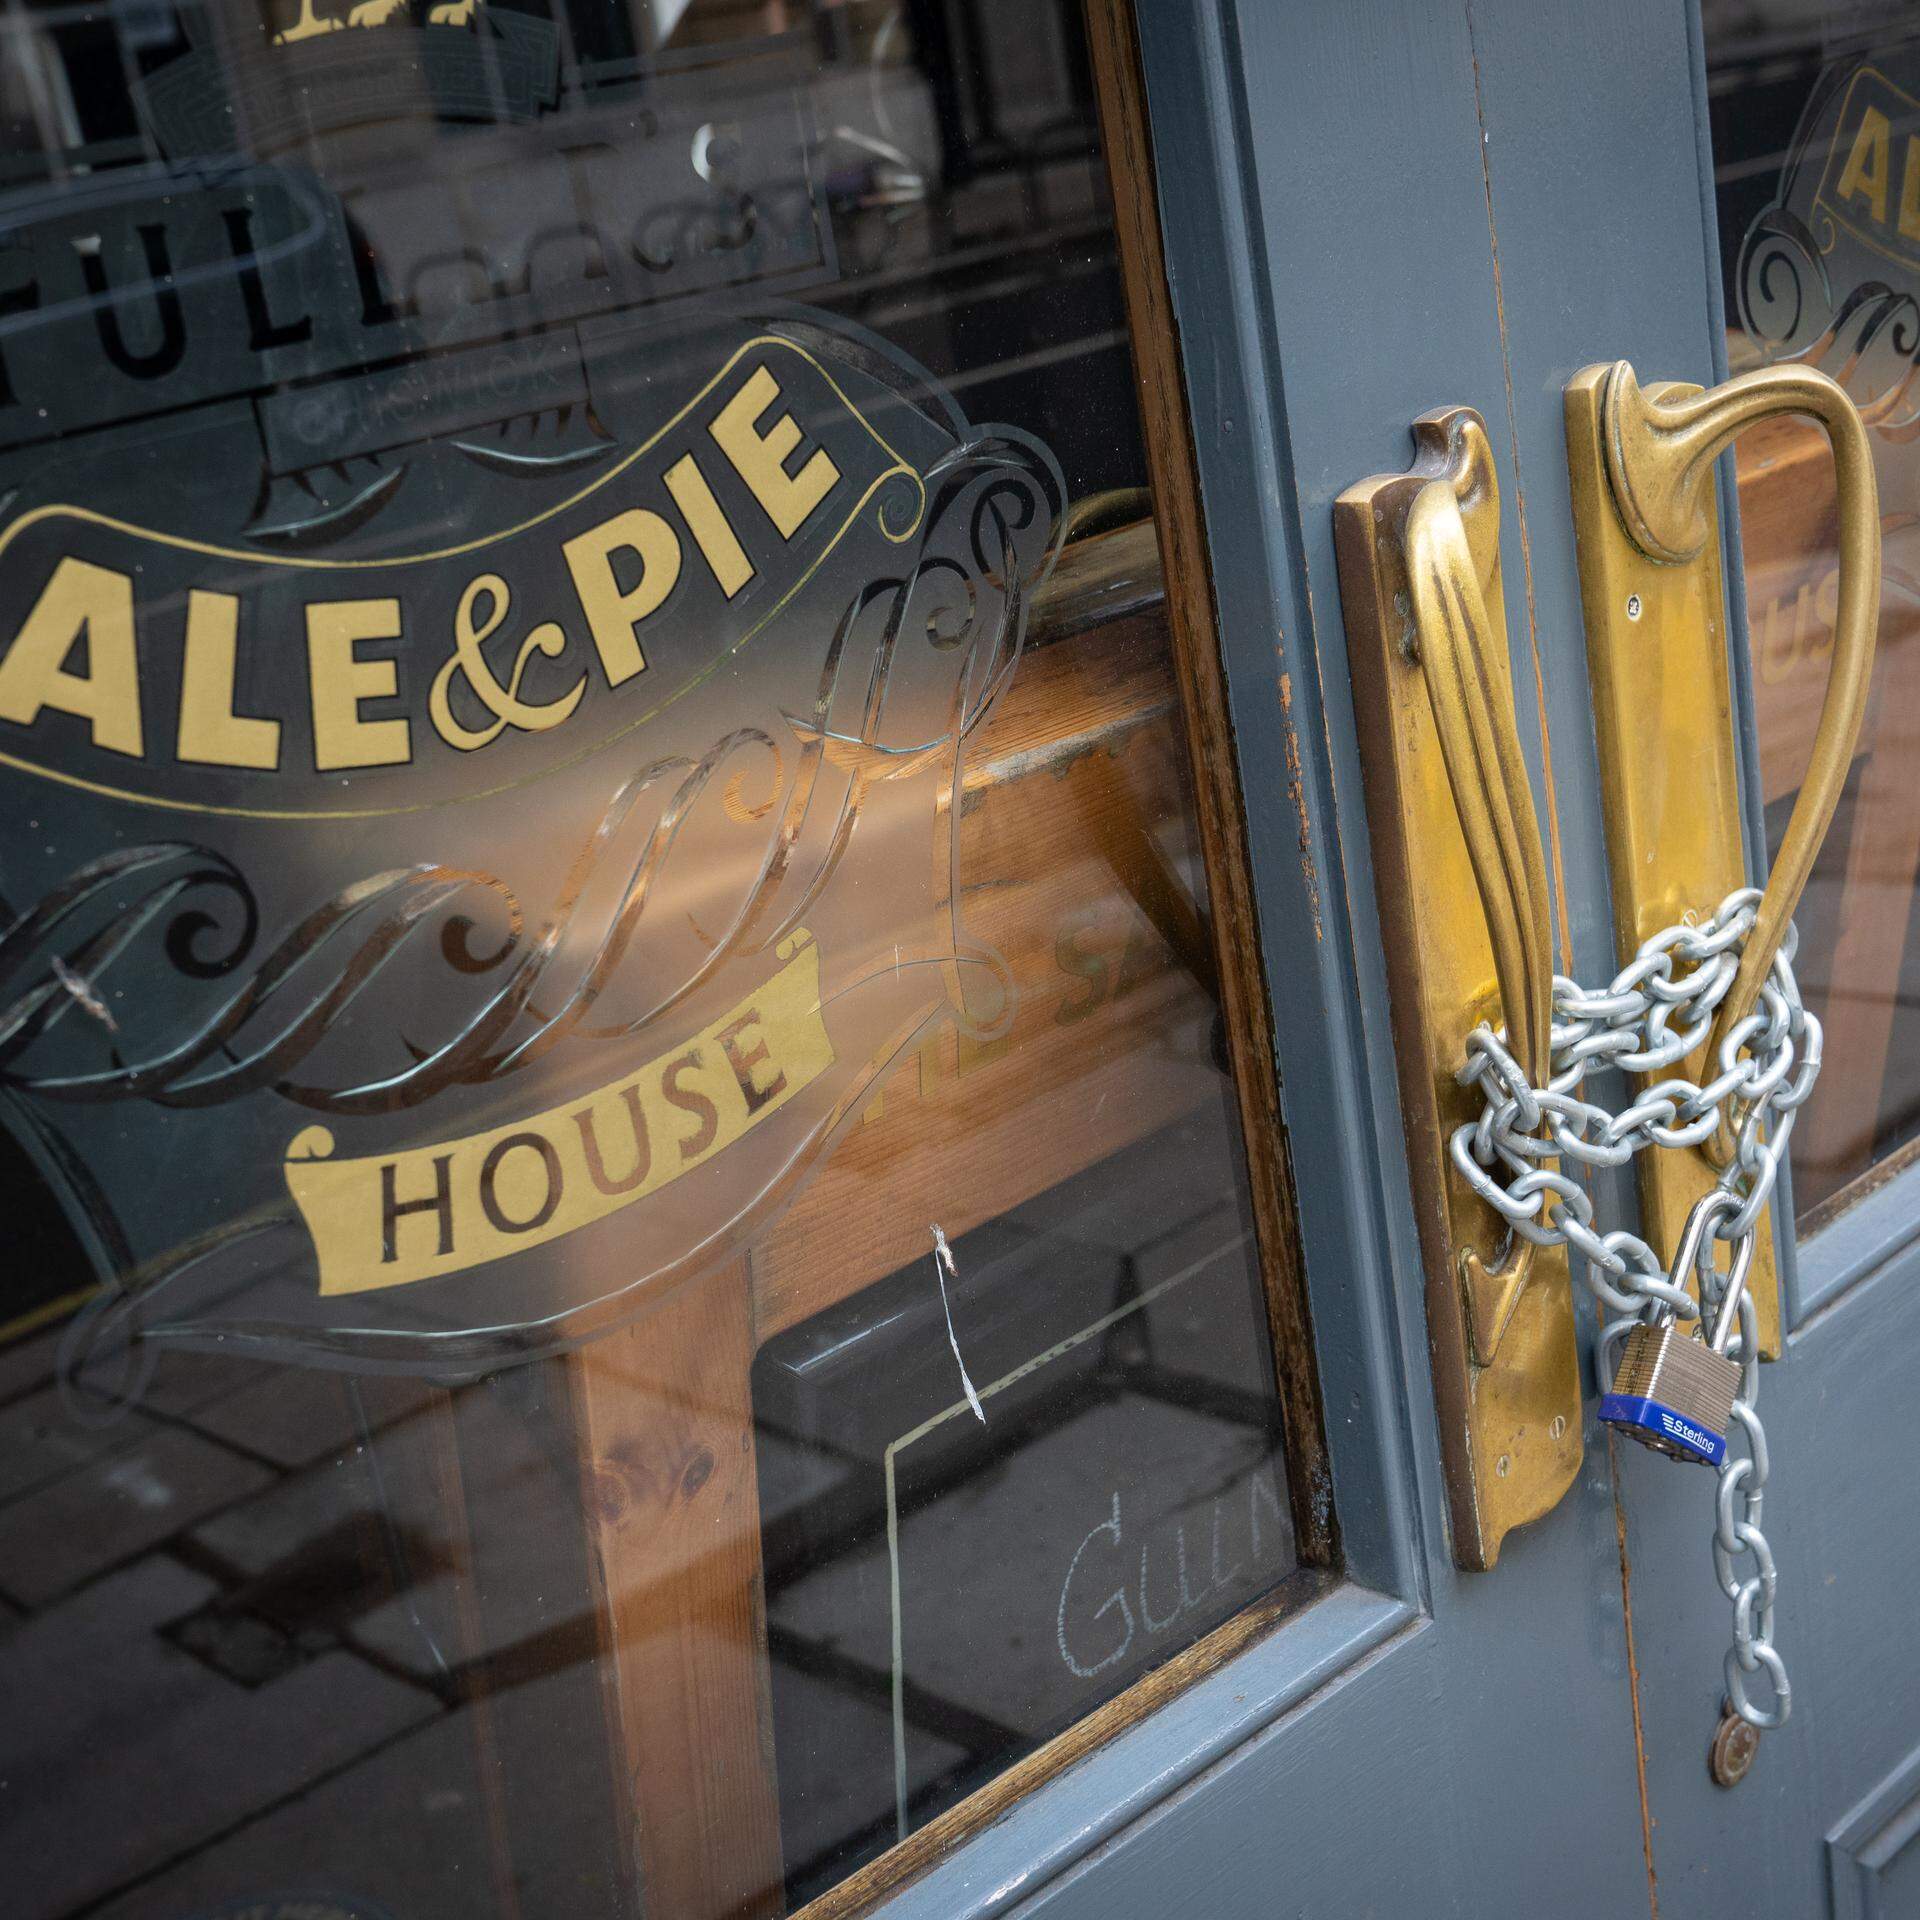 ARCHIV - 29.01.2021, Großbritannien, London: Ketten sichern die Türen eines geschlossenen Fuller's Pubs. In Großbritannien haben einer Studie zufolge im zurückliegenden Jahr wieder deutlich mehr Kneipen dichtgemacht. (zu dpa: «Good night, London? Das Nachtleben der Weltstadt in der Krise») Foto: Dominic Lipinski/PA Wire/dpa +++ dpa-Bildfunk +++